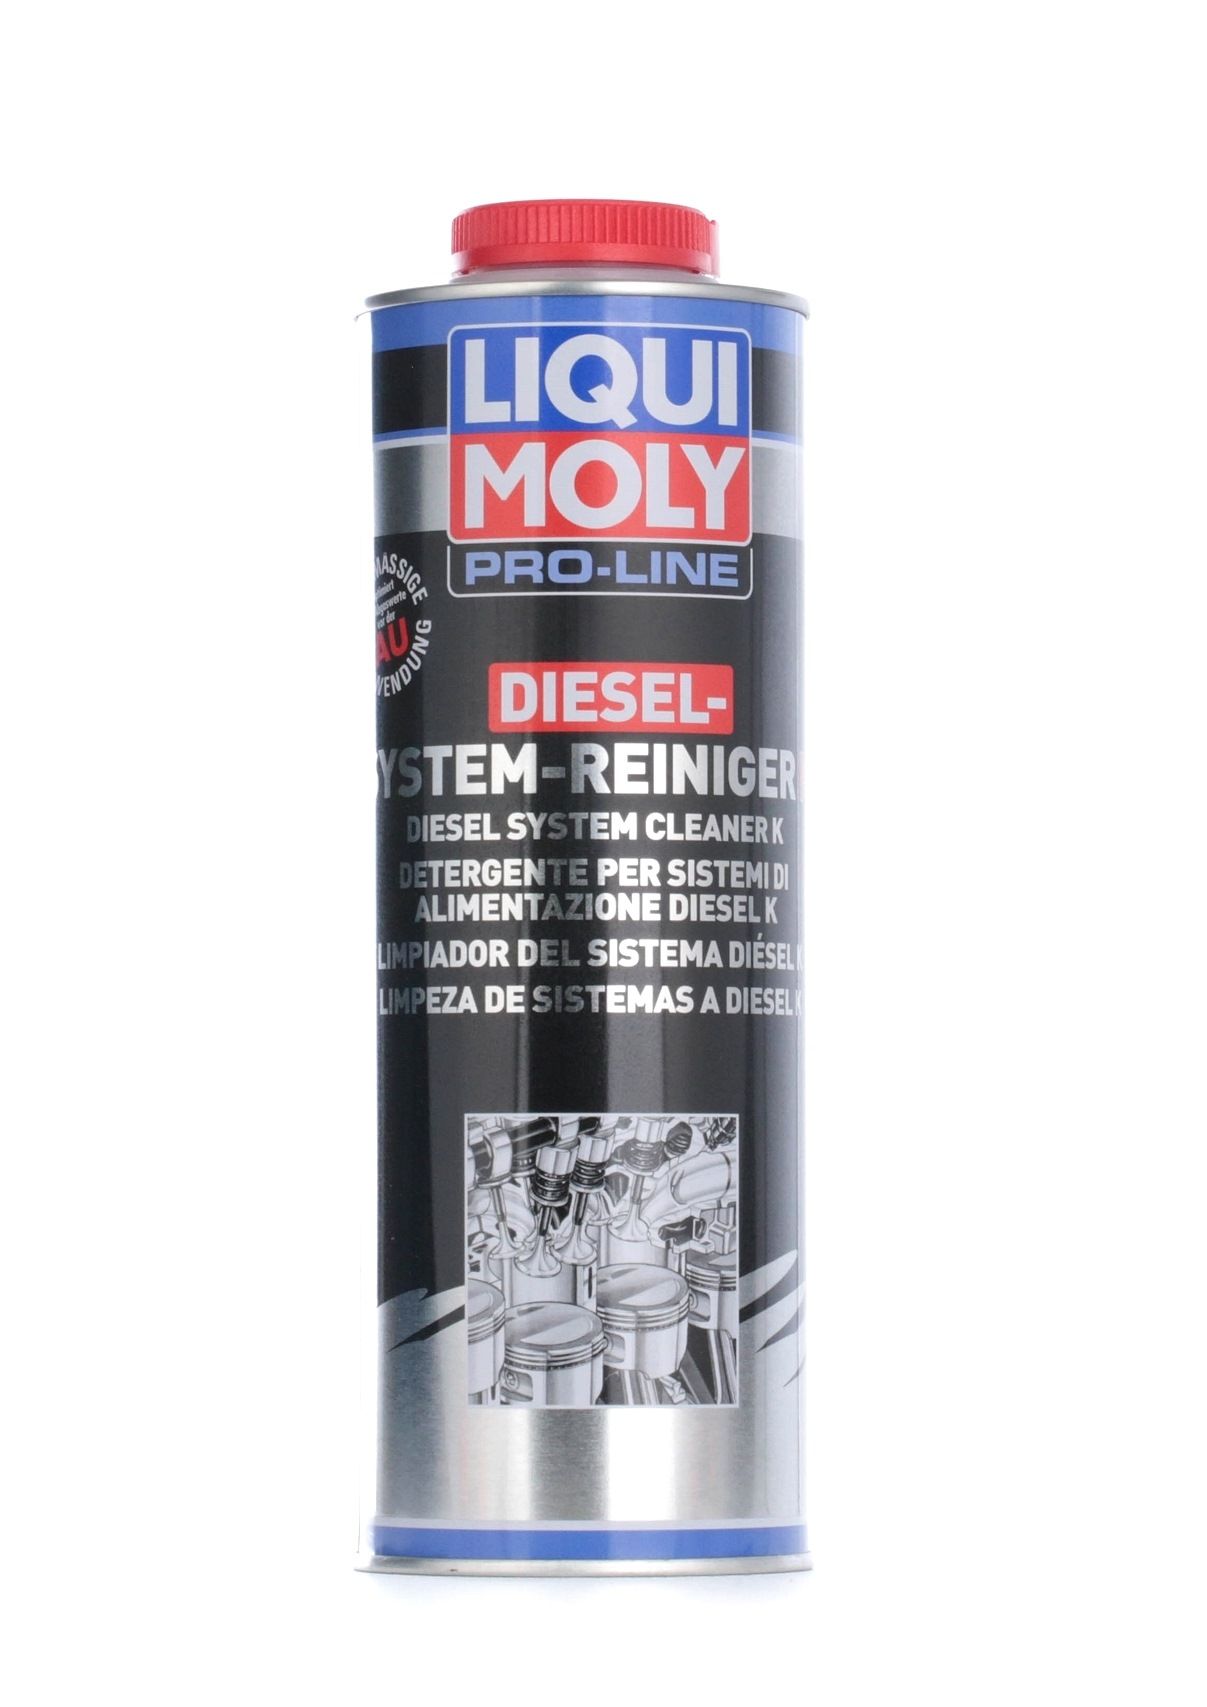 LIQUI MOLY Reiniger, Dieseleinspritzsystem Diesel, Inhalt: 1l 5144 - kostengünstig kaufen